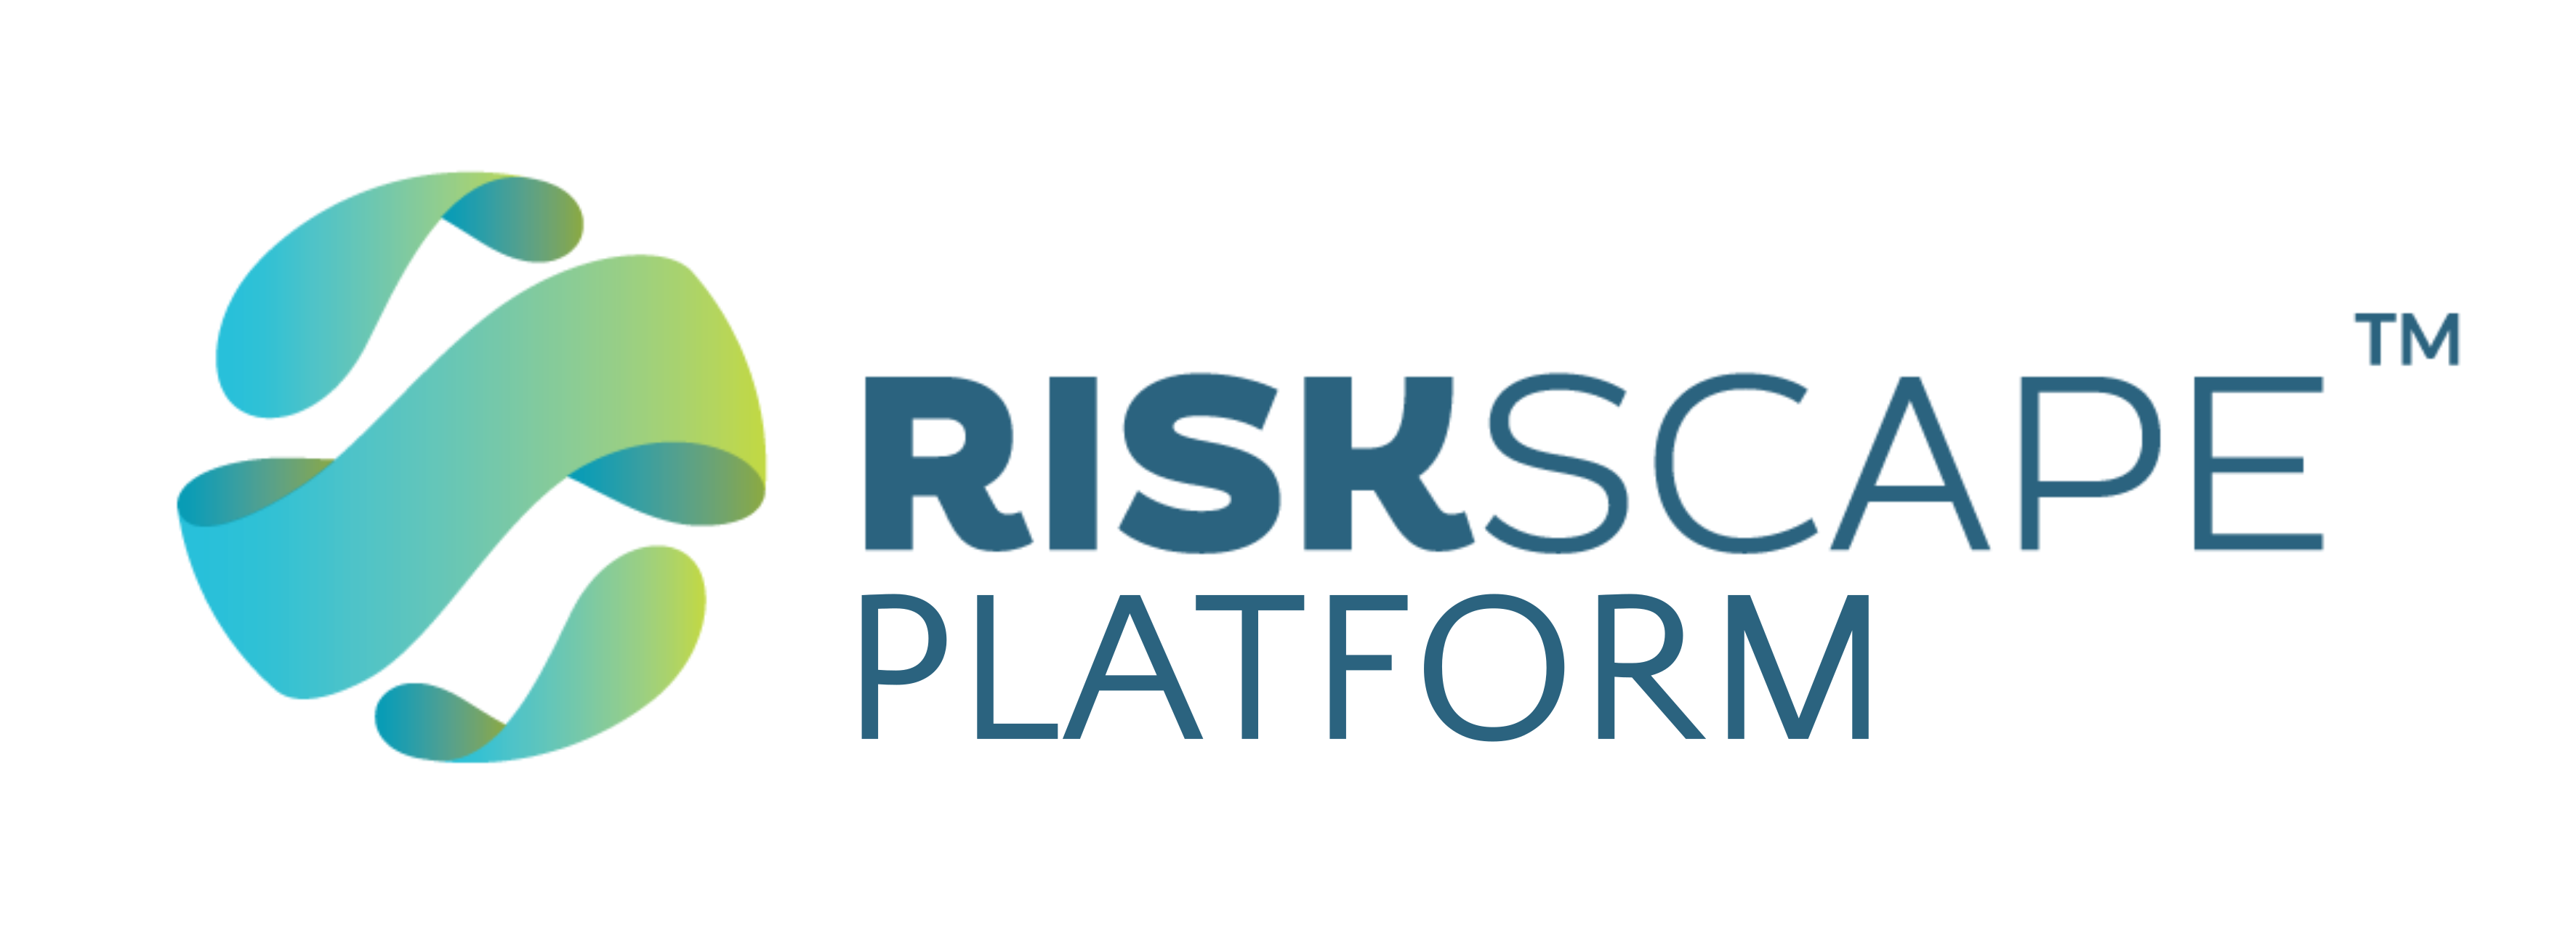 RiskScape Platform logo